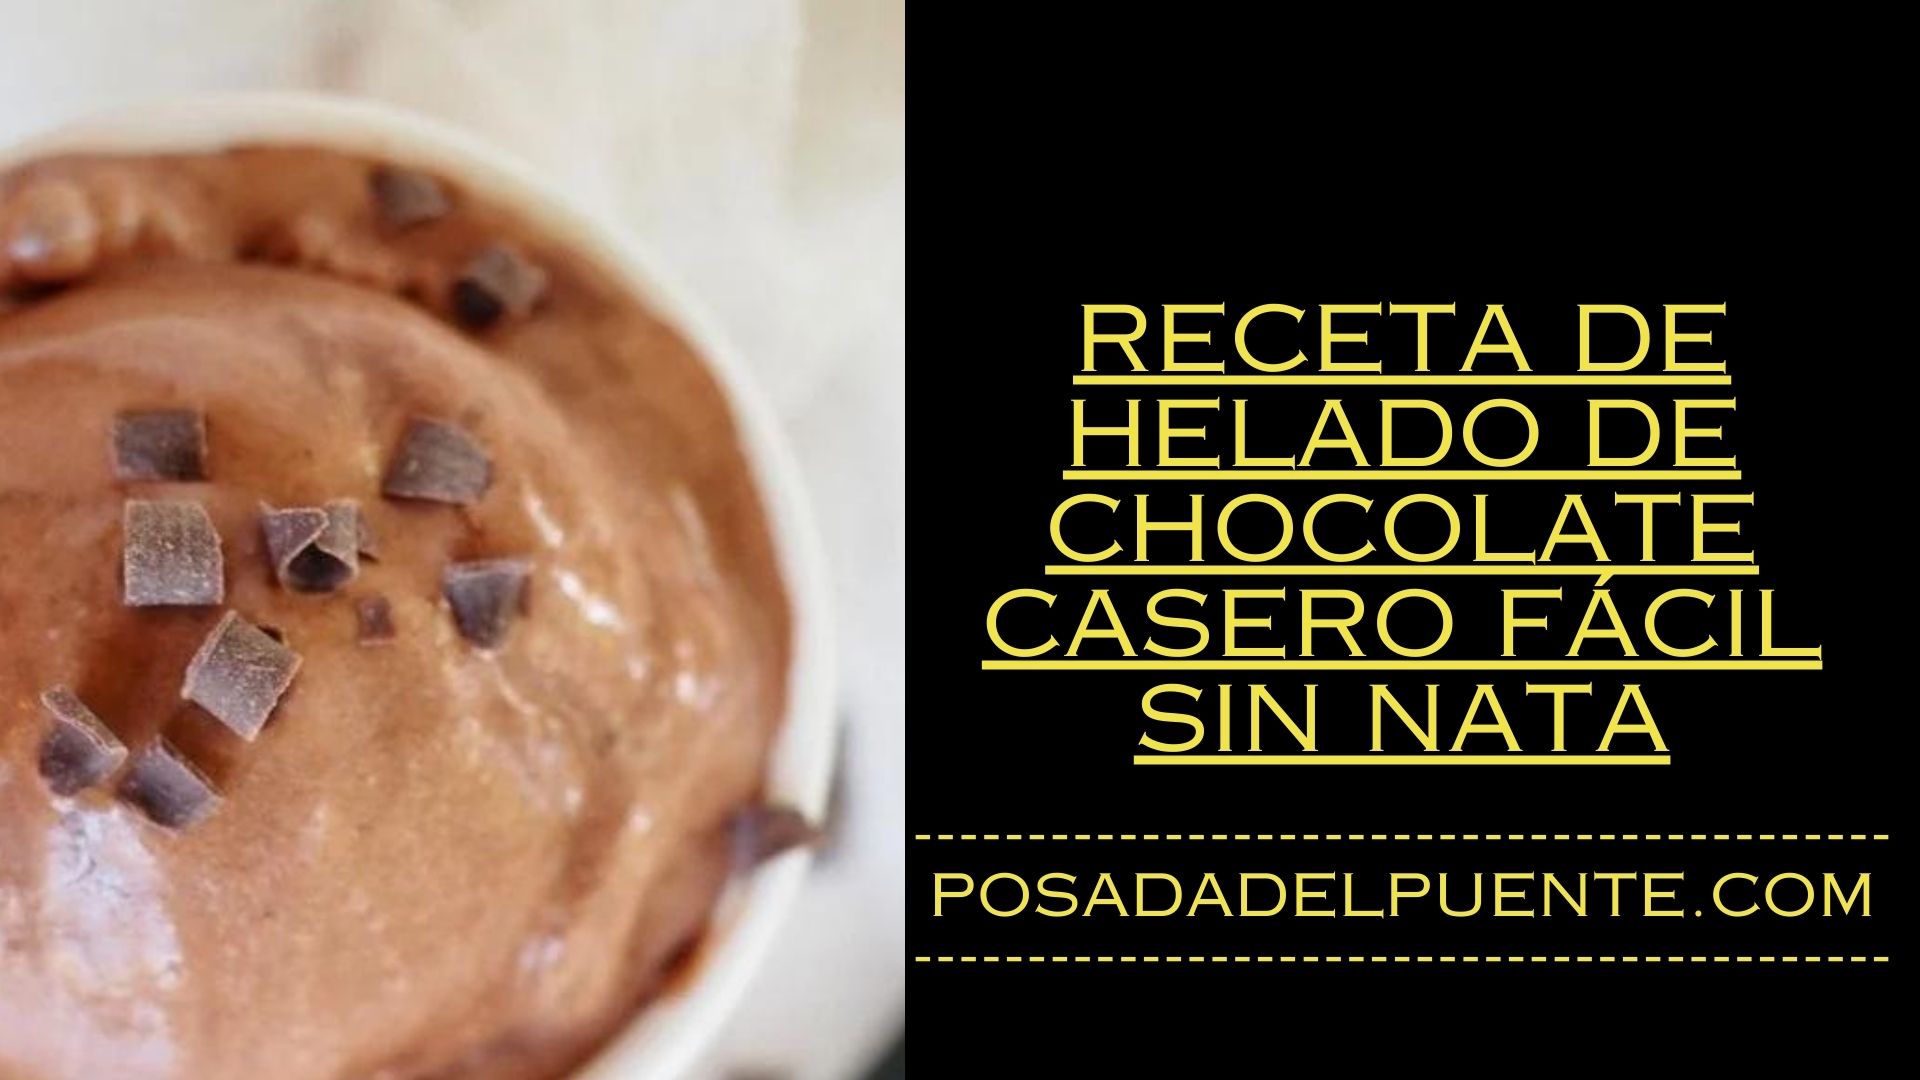 Receta De Helado De Chocolate Casero Fácil Sin Nata